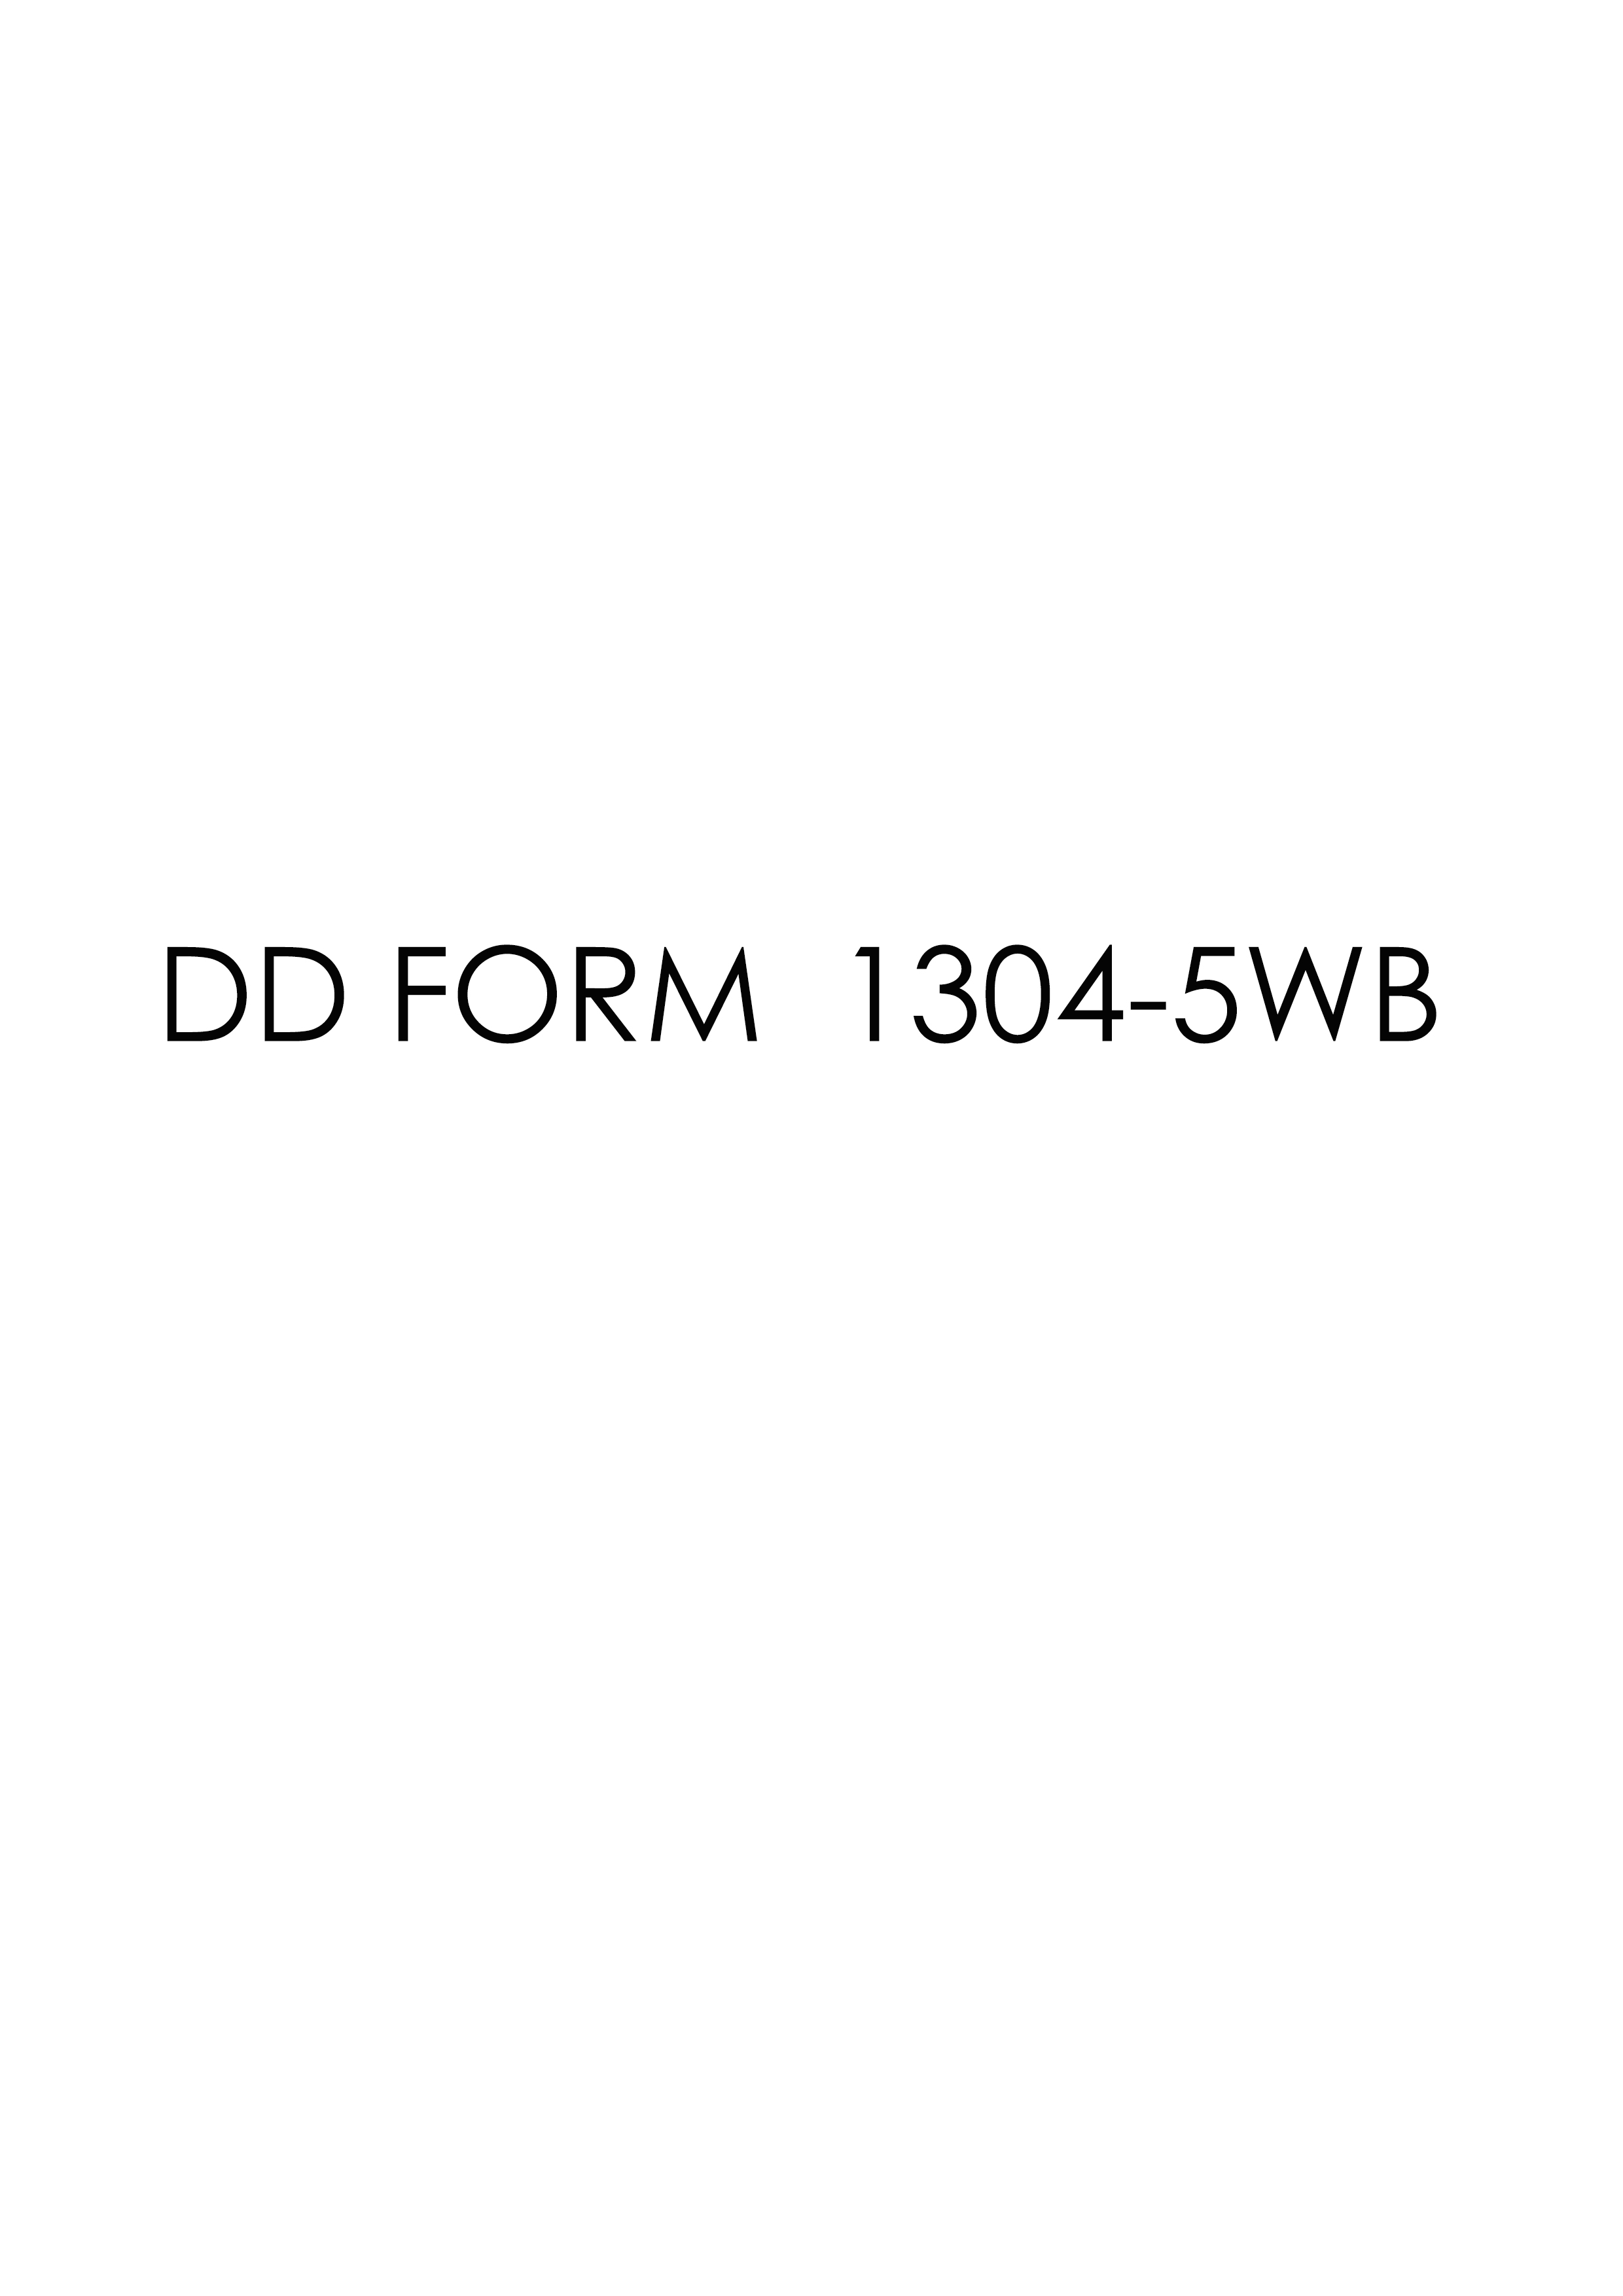 Download dd 1304-5WB Form